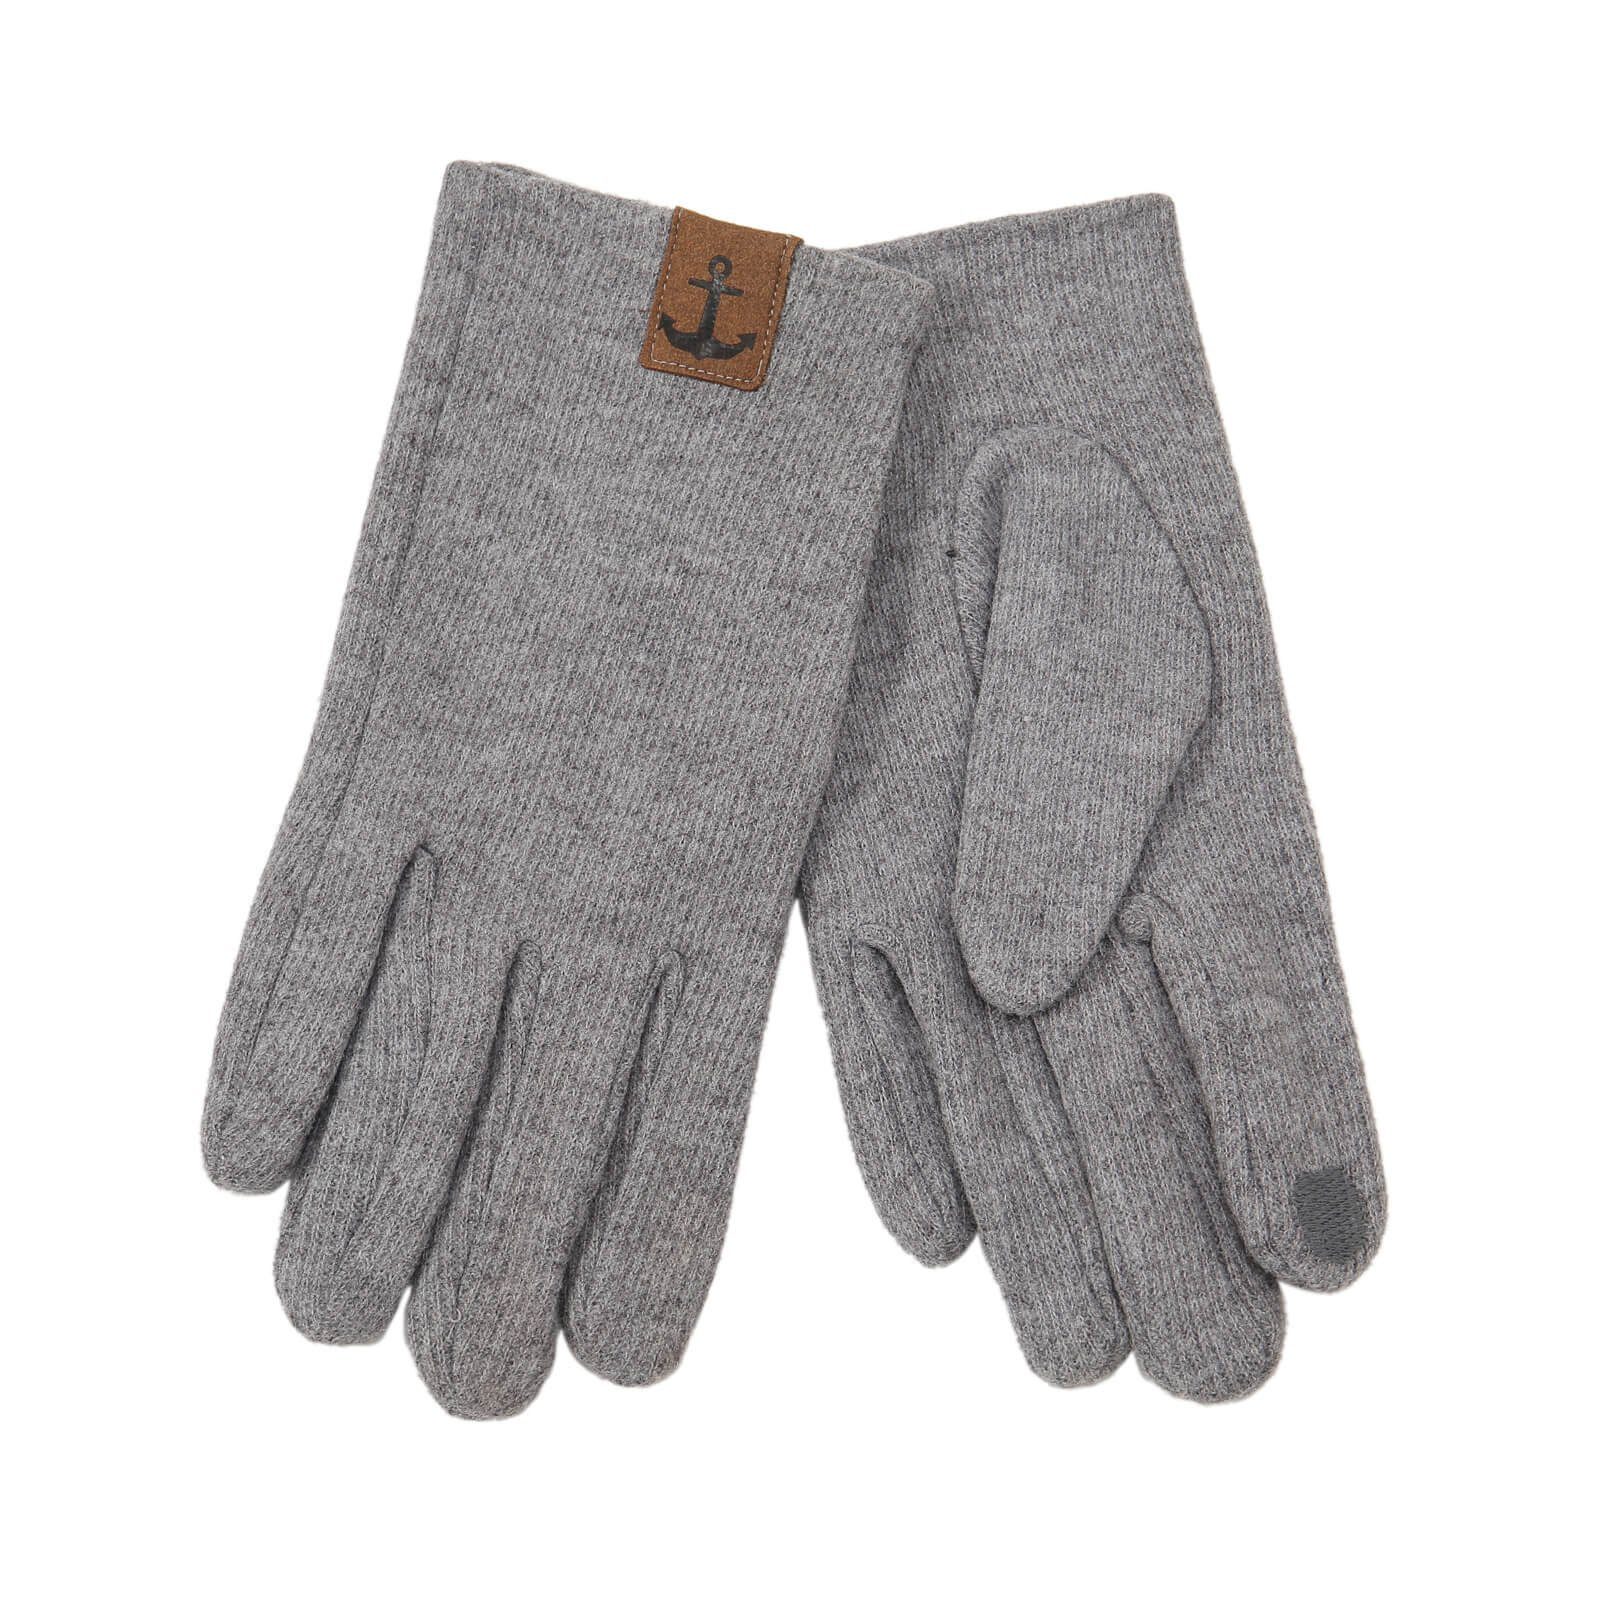 Leoberg Strickmütze Herren Handschuhe und verschiedenen 252022-Grau-19 Designs Winterhandschuhe in Farben